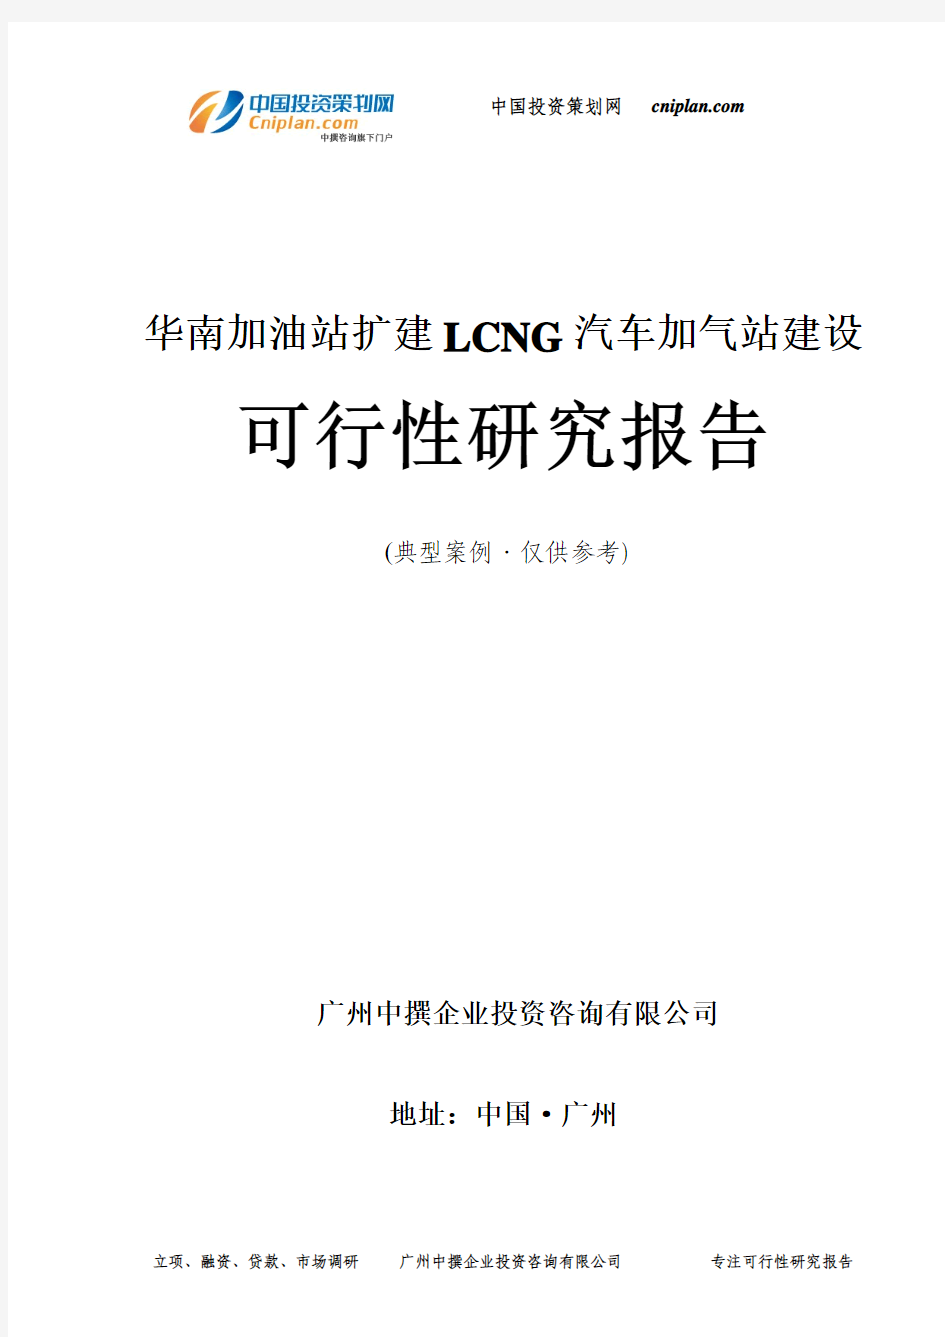 华南加油站扩建LCNG汽车加气站建设可行性研究报告-广州中撰咨询